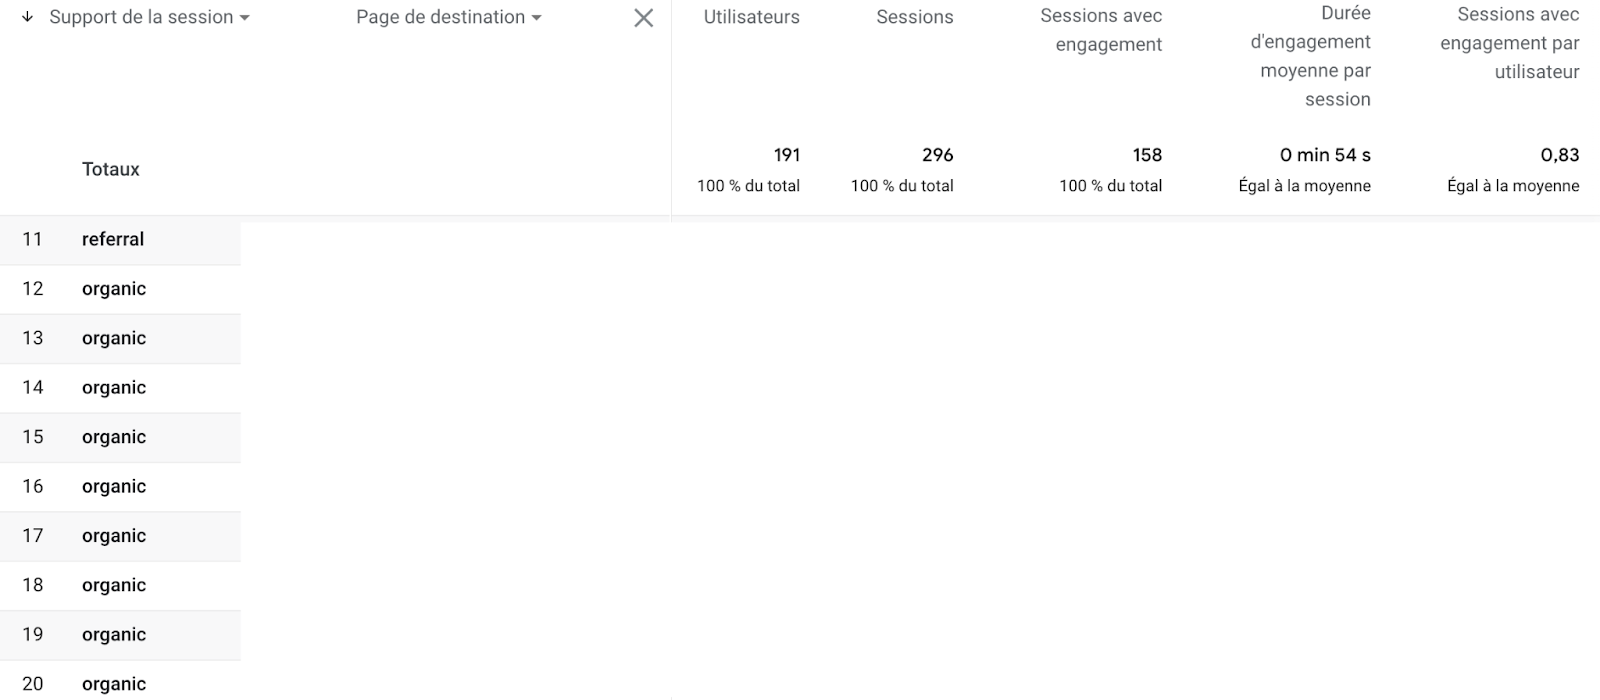 Plusieurs données en lien avec les sessions des utilisateurs comme par exemple la durée d'engagement moyenne par session